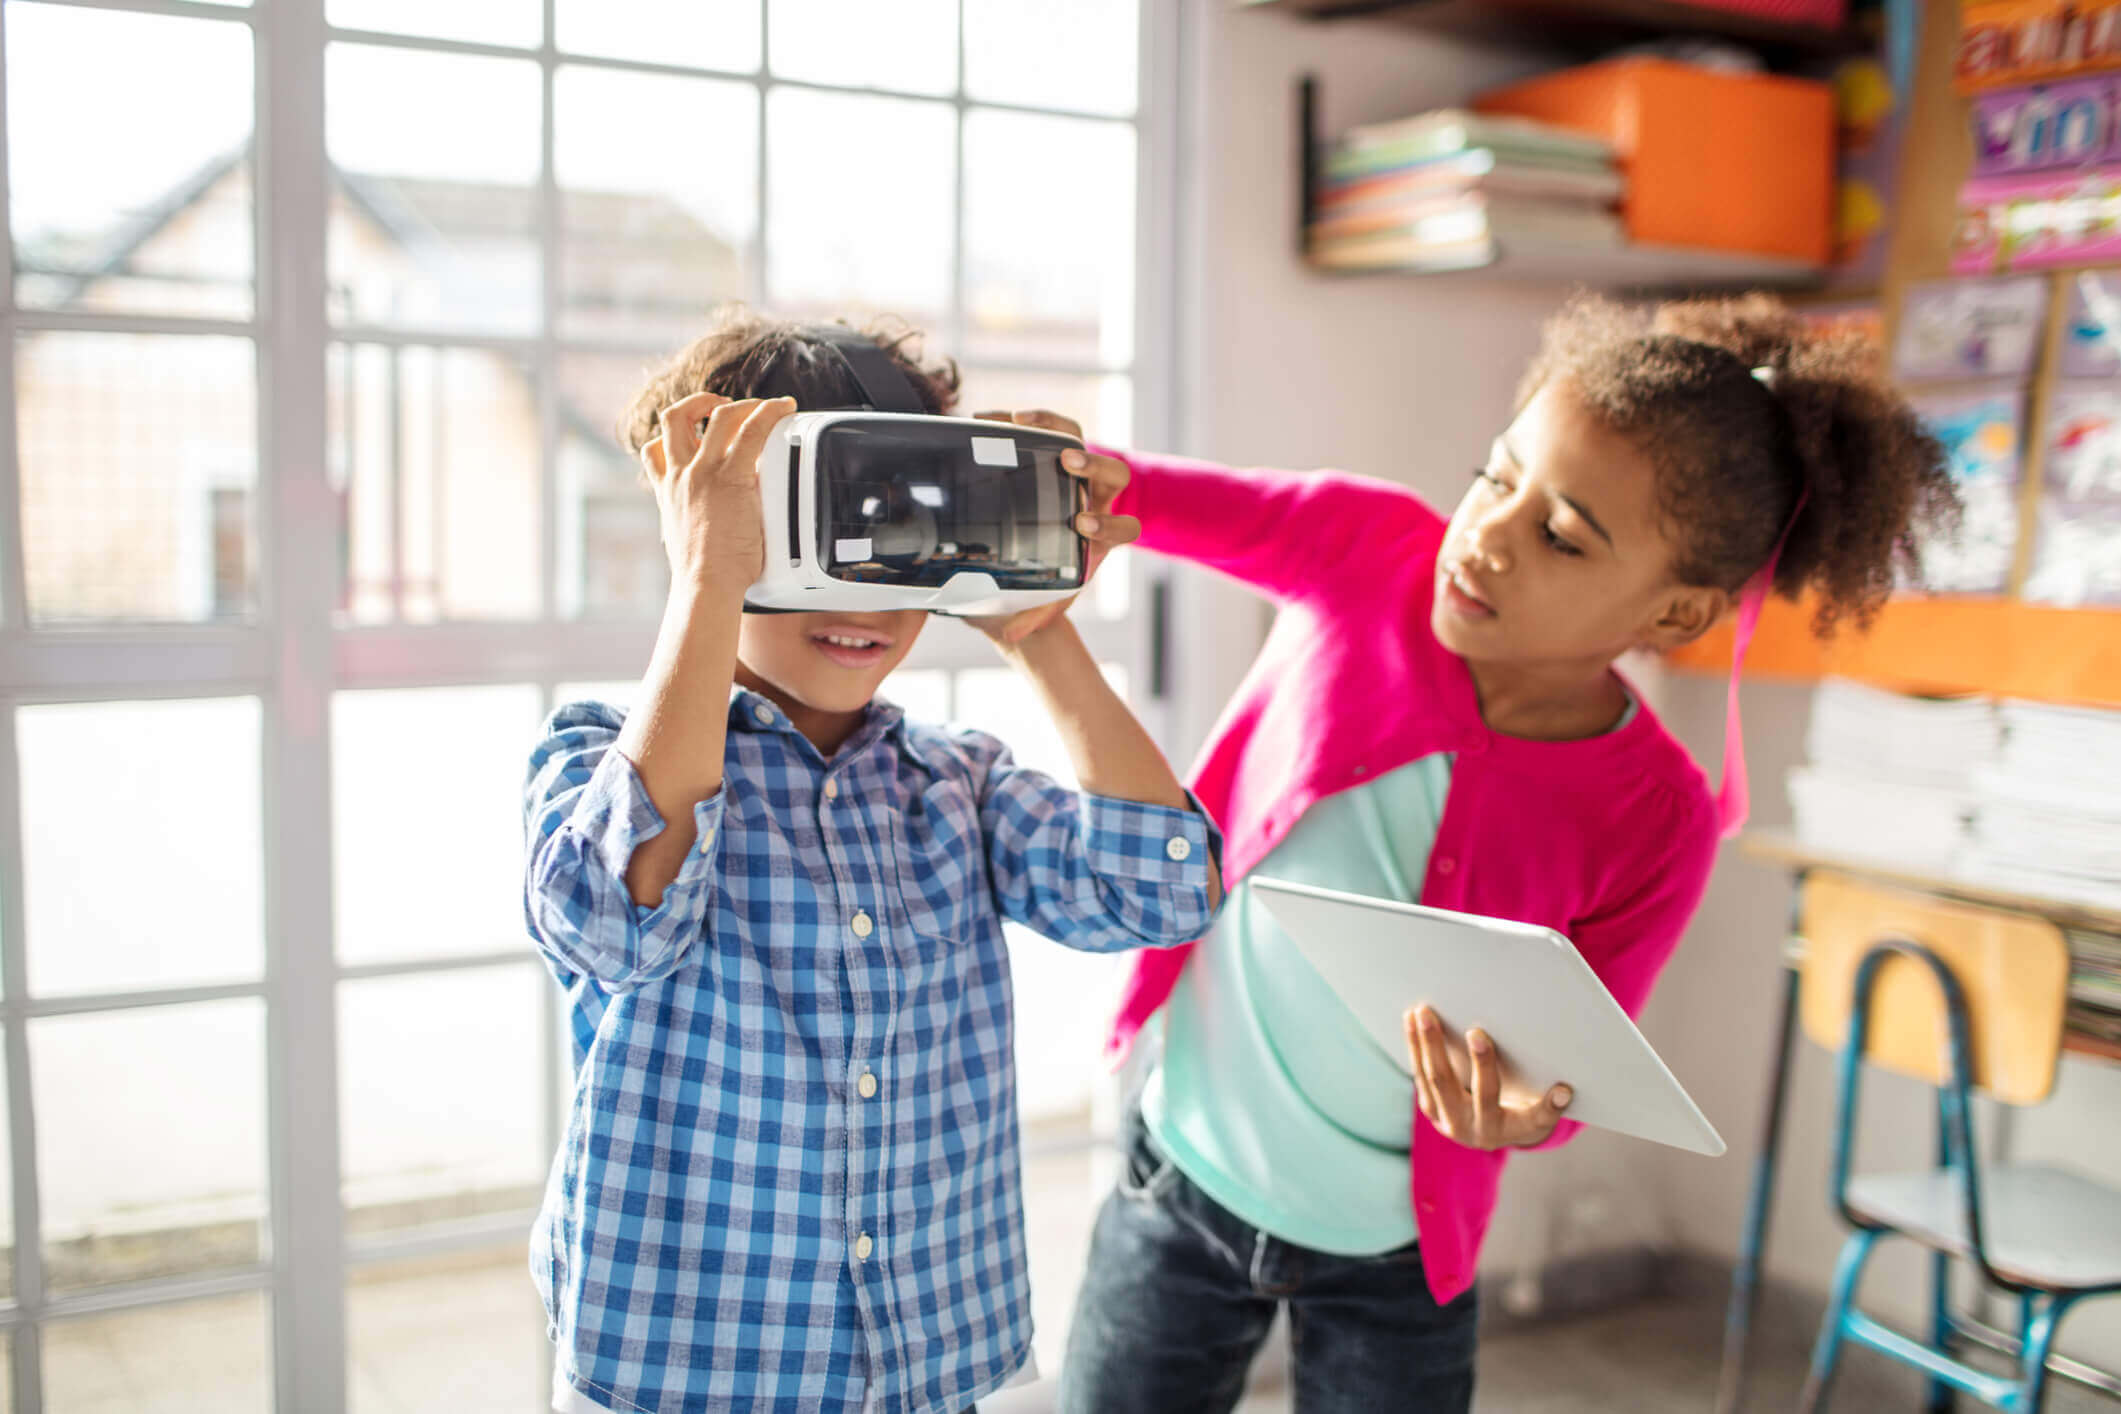 Deux élèves travaillent ensemble en utilisant un casque pour la réalité virtuelle et une tablette pour la réalité augmentée.